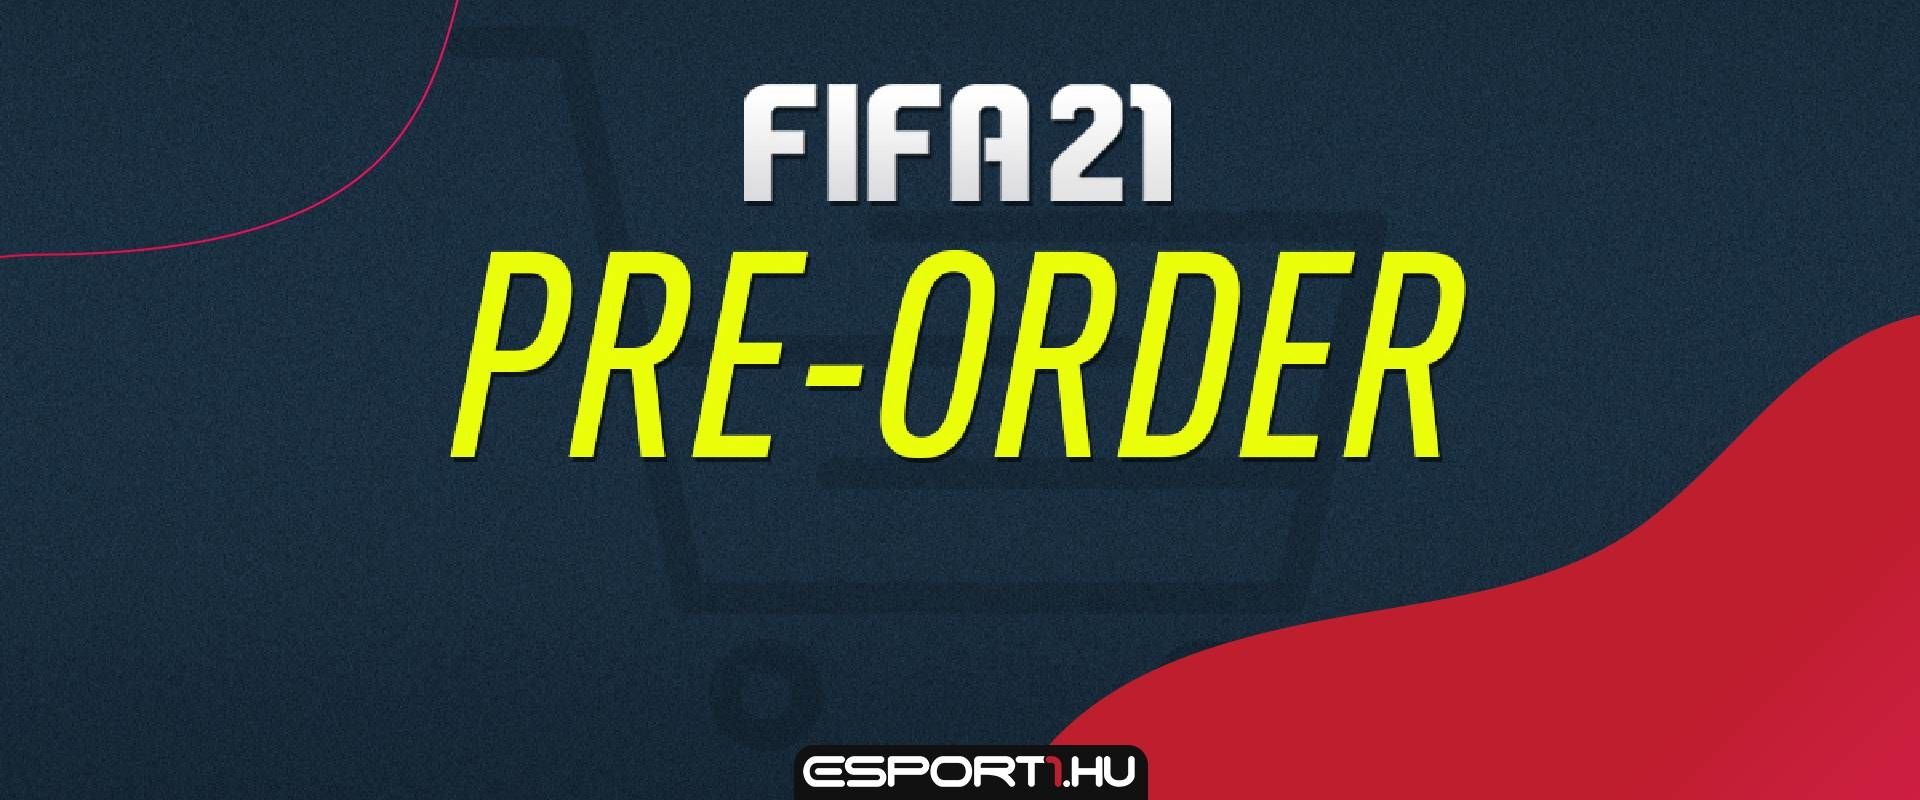 Steamre is megjelenik a FIFA21, és az alábbi bónuszok járnak előrendelésért